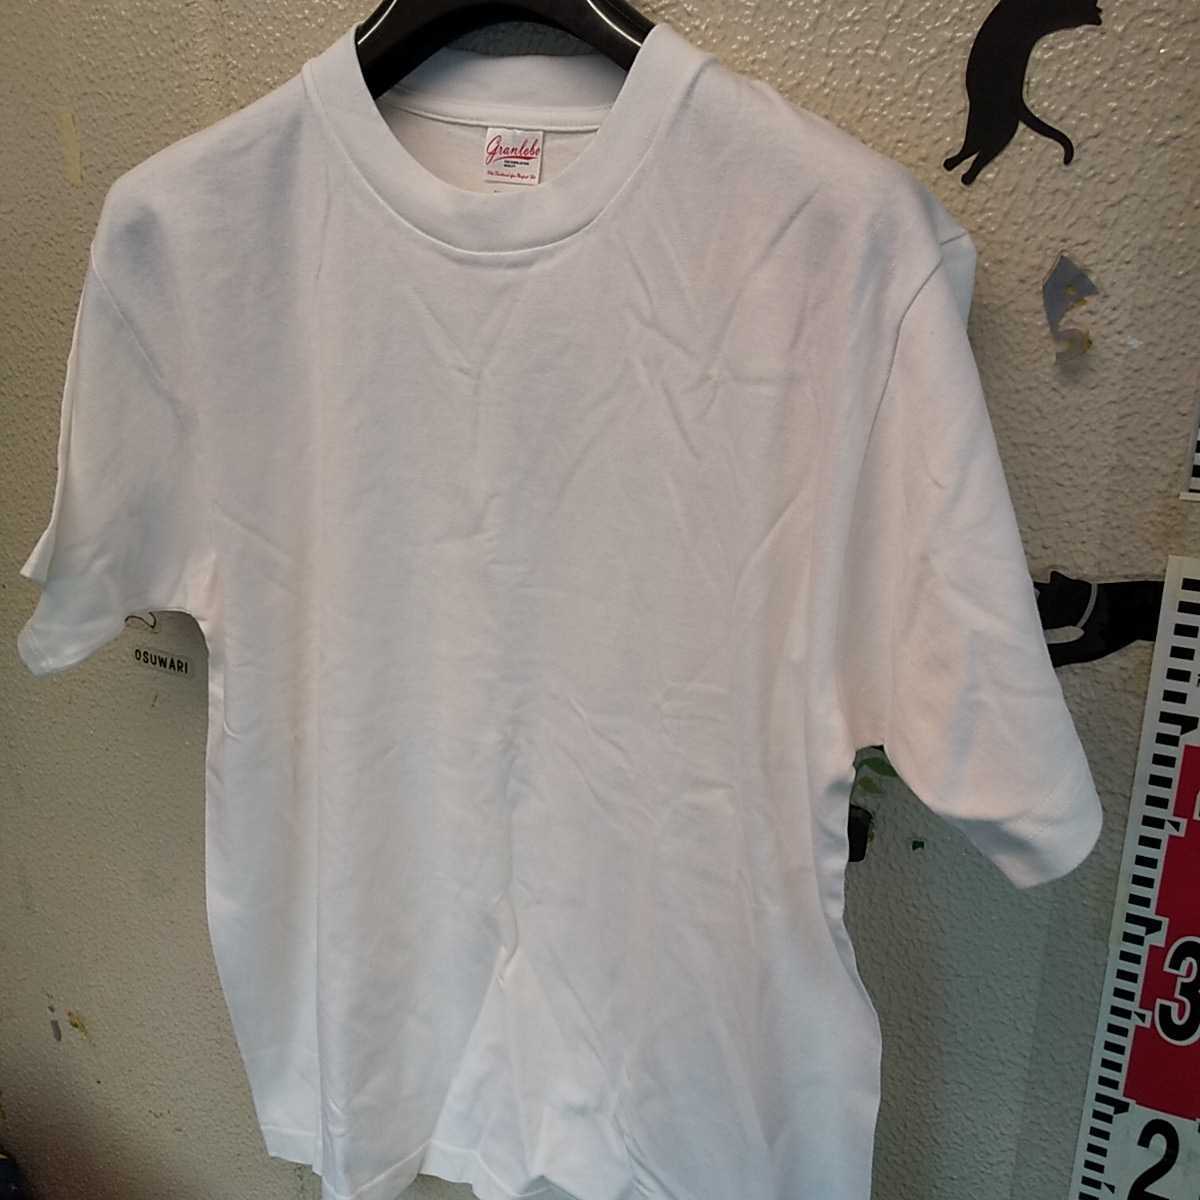 granlolo MEDIUM メンズインナー半袖シャツ新品未使用プレミアム 53 半袖Tシャツ 4 _画像2